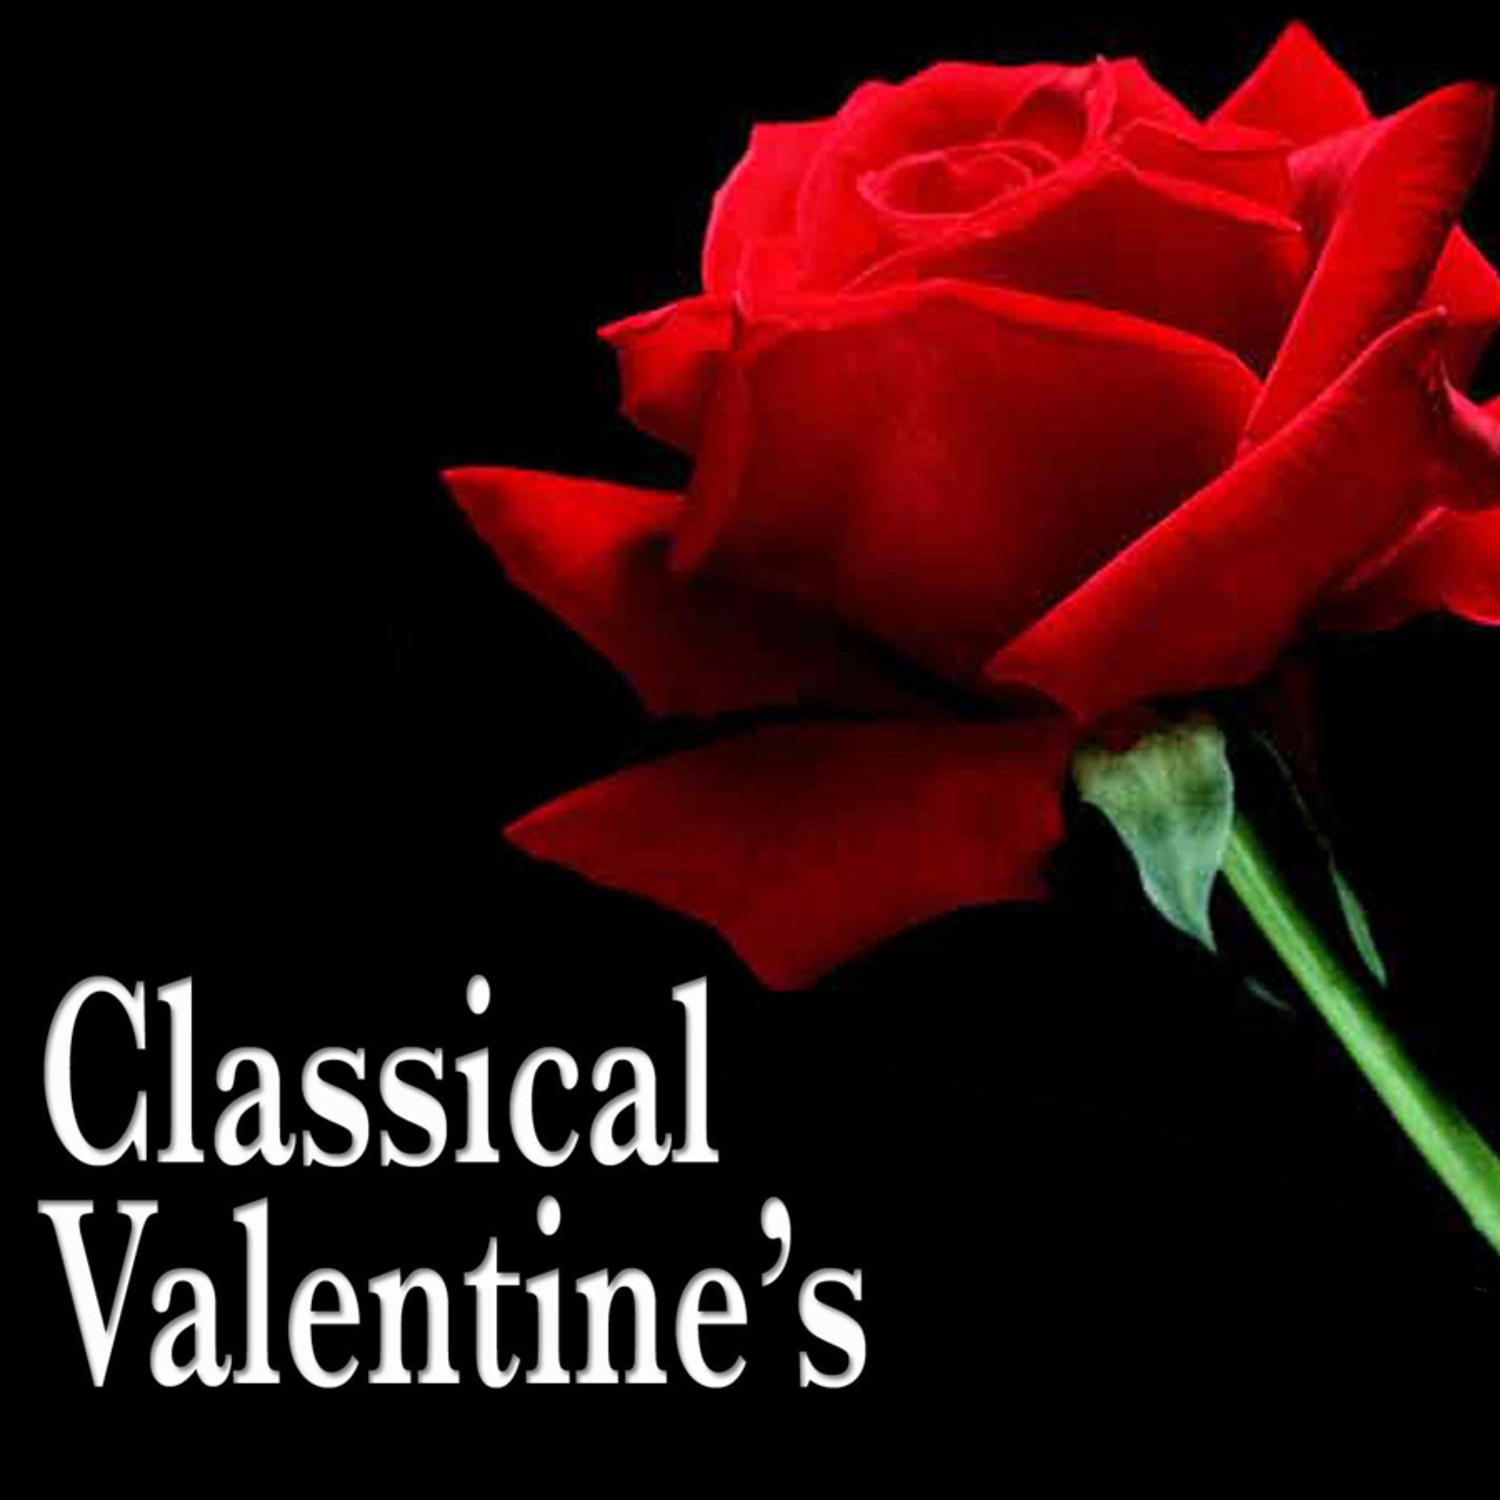 A Classical Valentine's